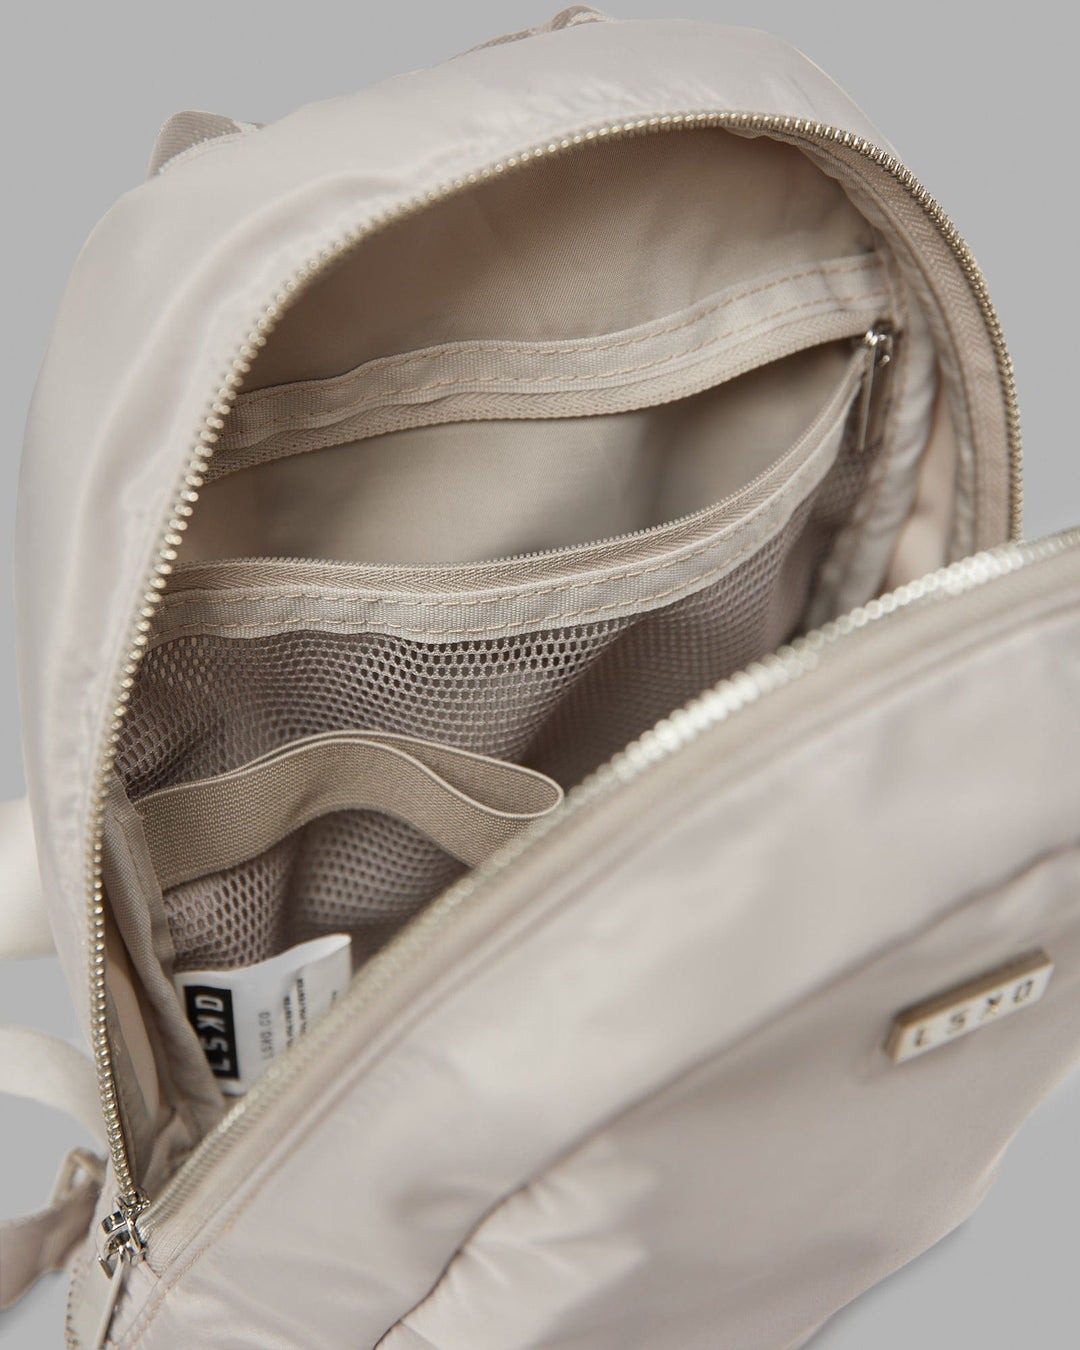 Essential Mini Backpack - Shale Beige